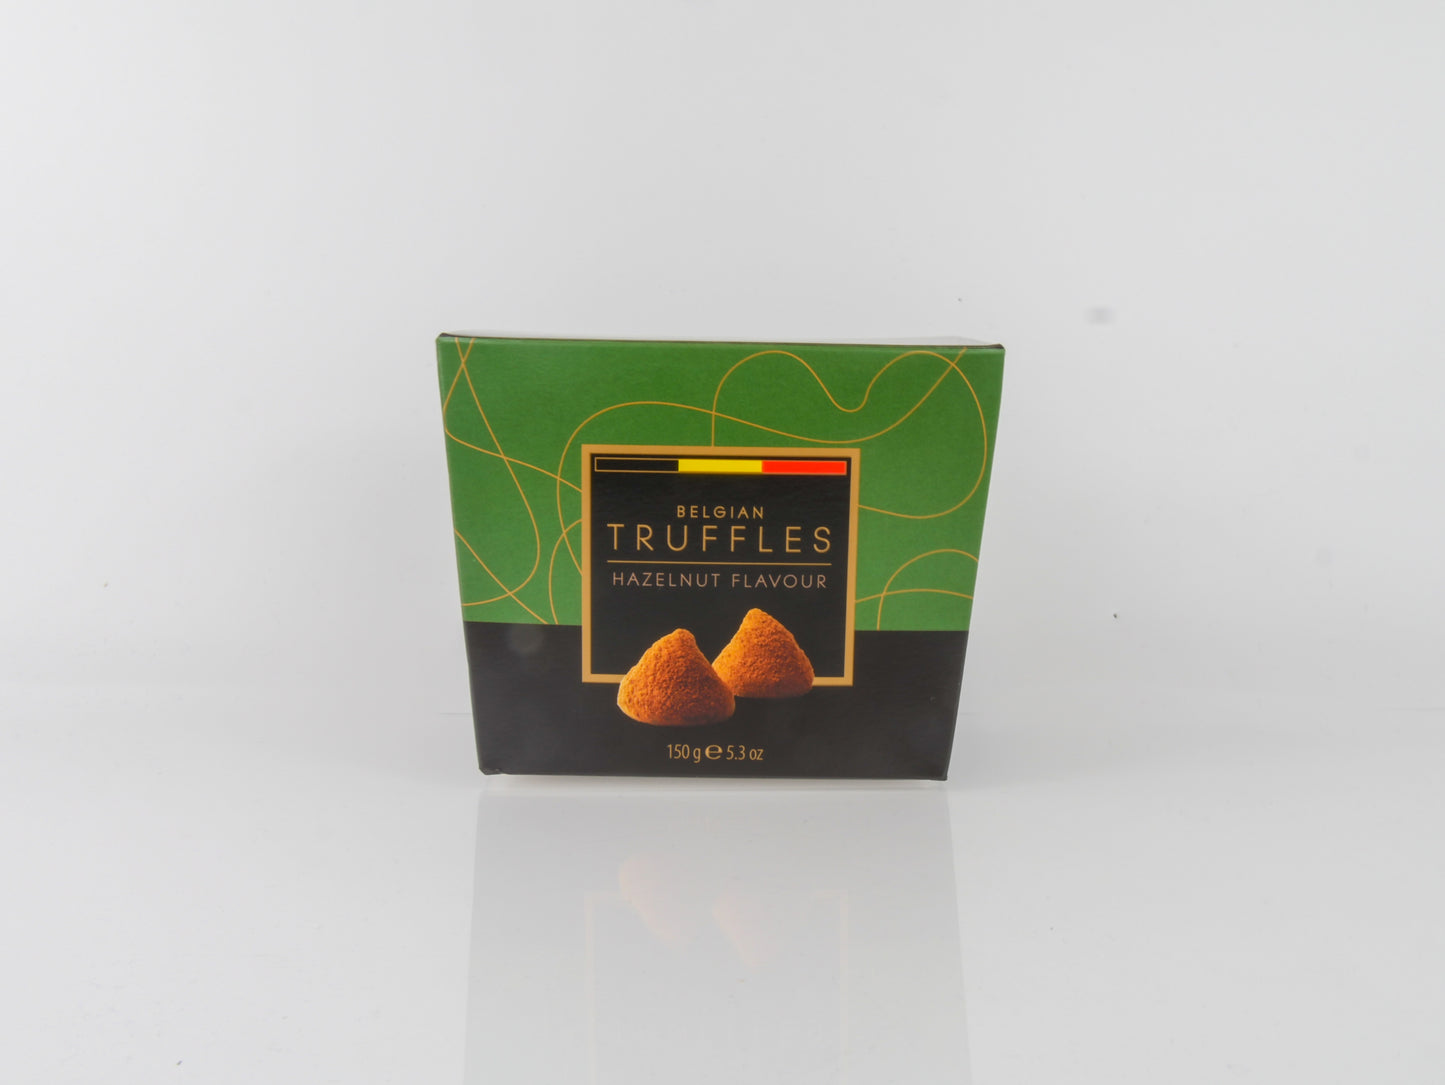 Belgian Truffles Hazelnut